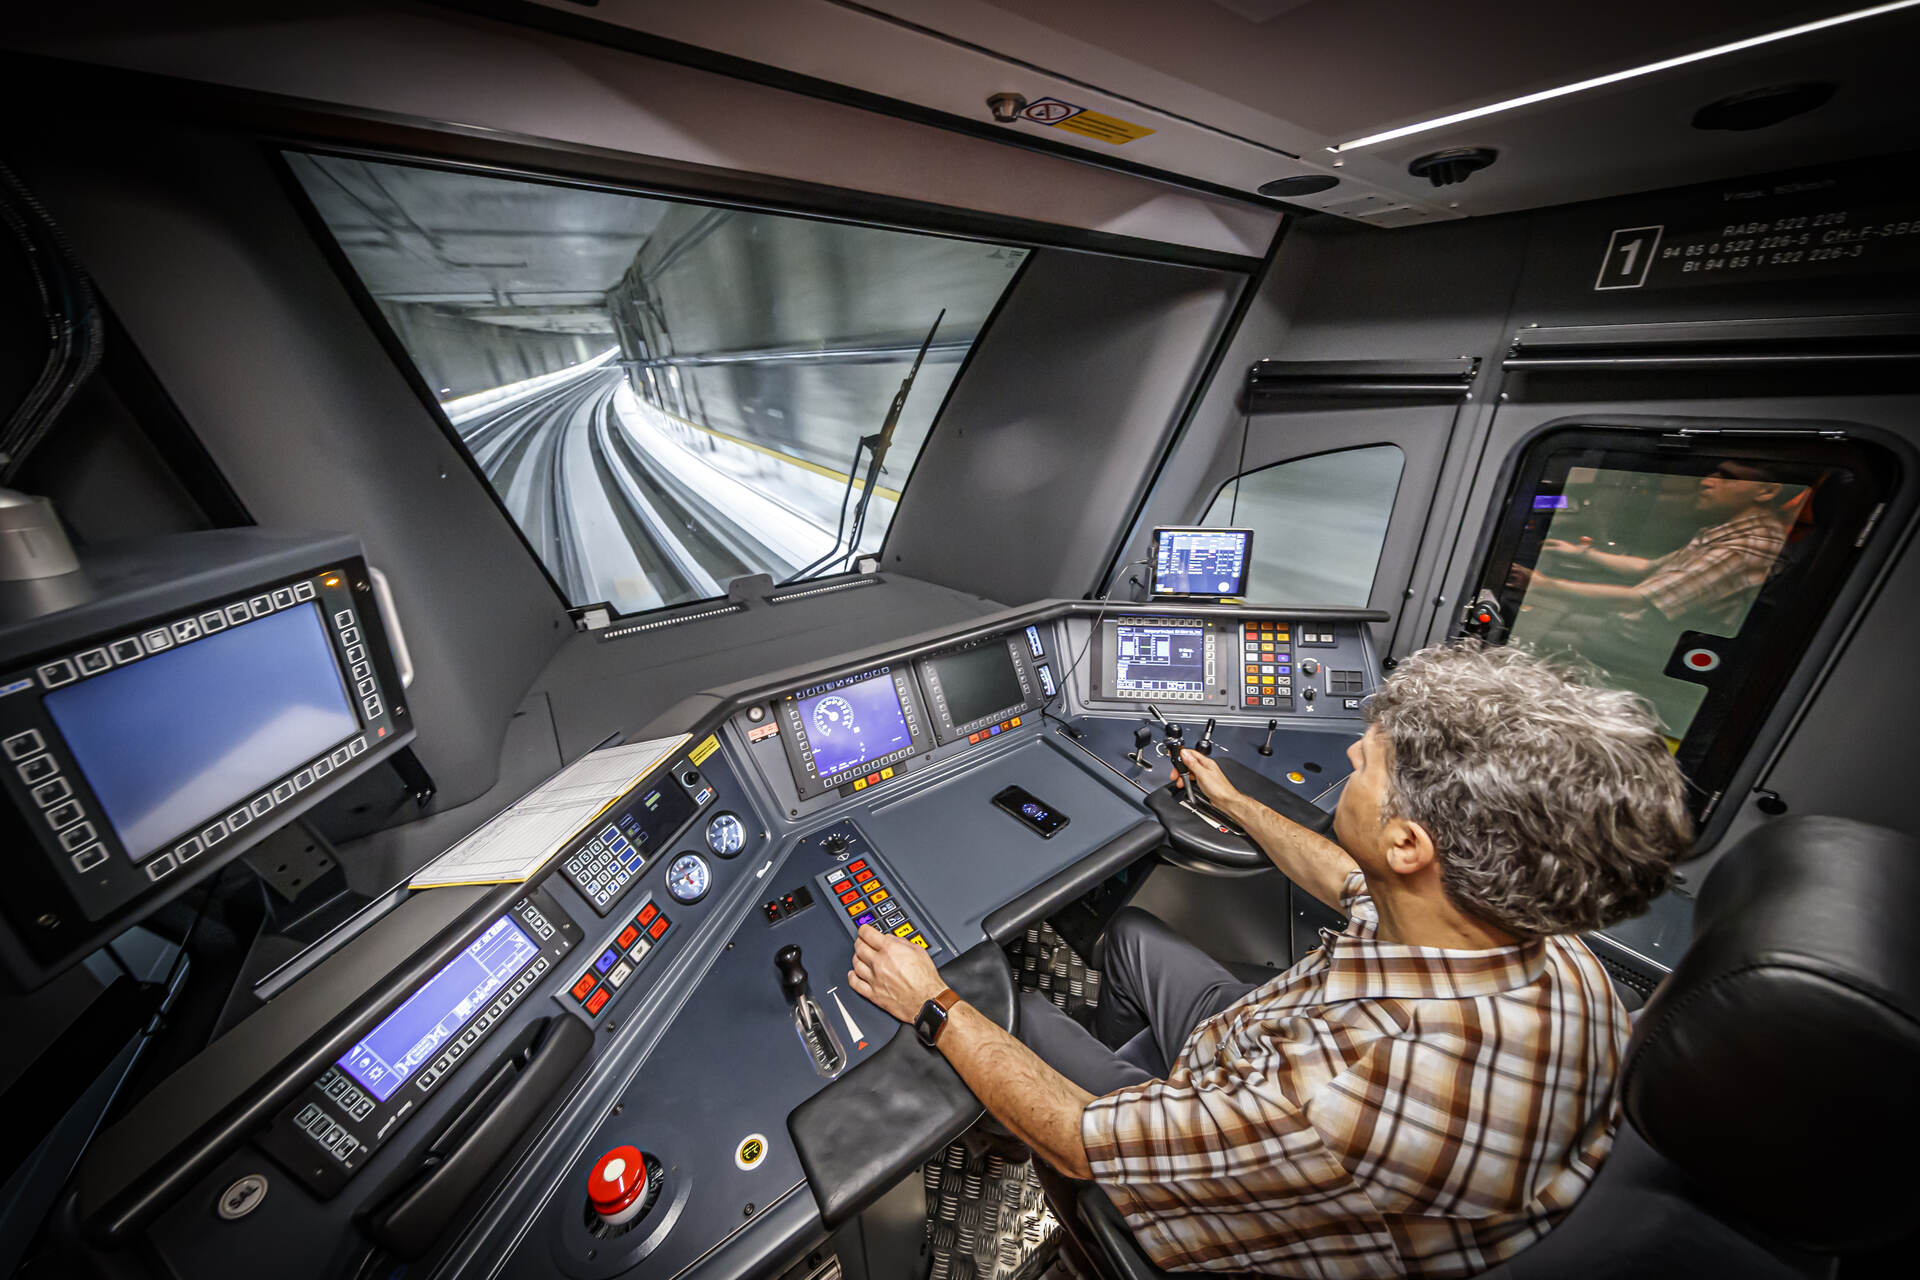 Punctuality: ang passenger compartment ng isang Leman Express na tren